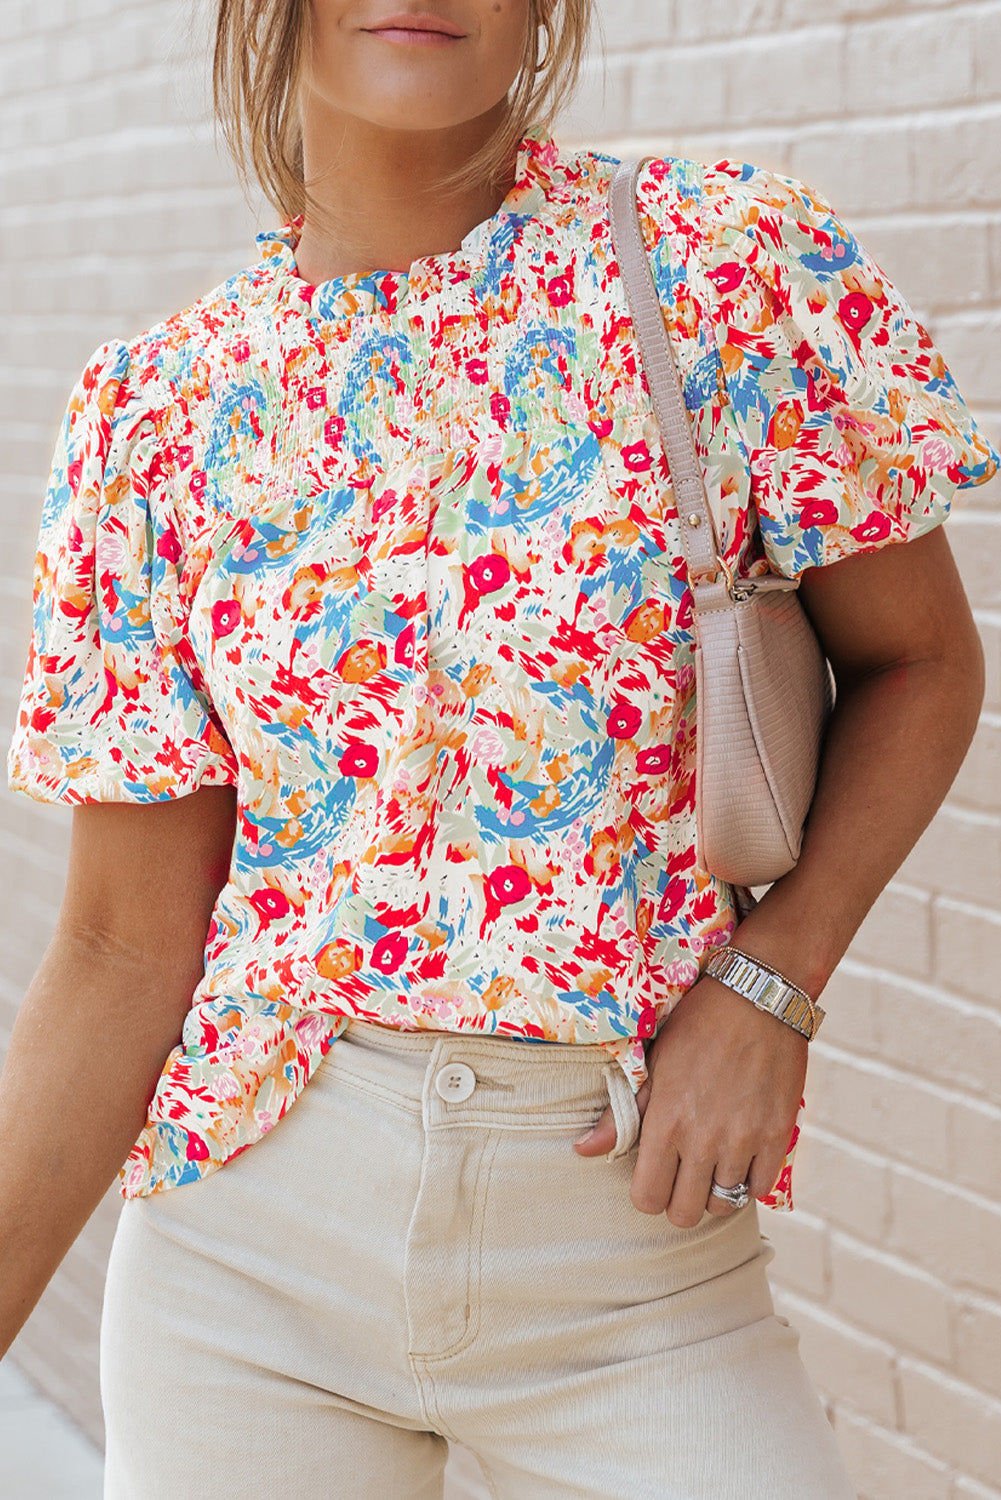 Mehrfarbige Bluse mit gesmokten Puffärmeln und abstraktem Print